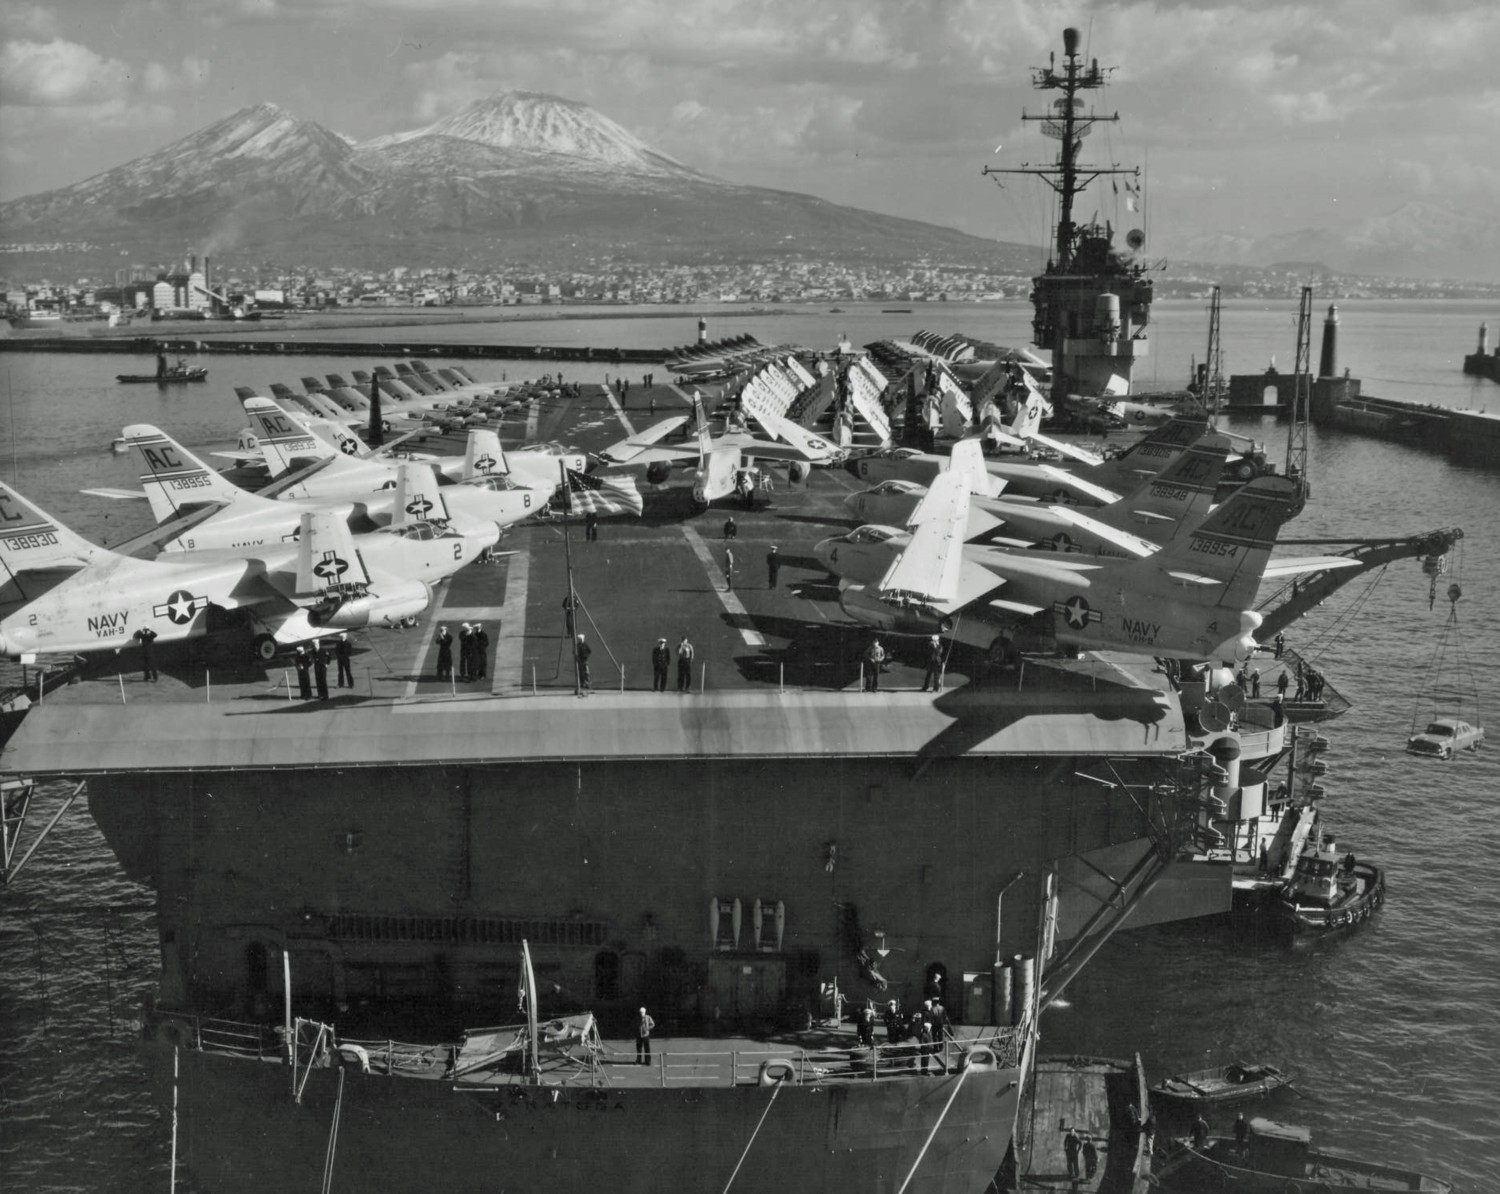 cv-60 uss saratoga forrestal class aircraft carrier air group cvg-3 us navy naples italy 1958 158